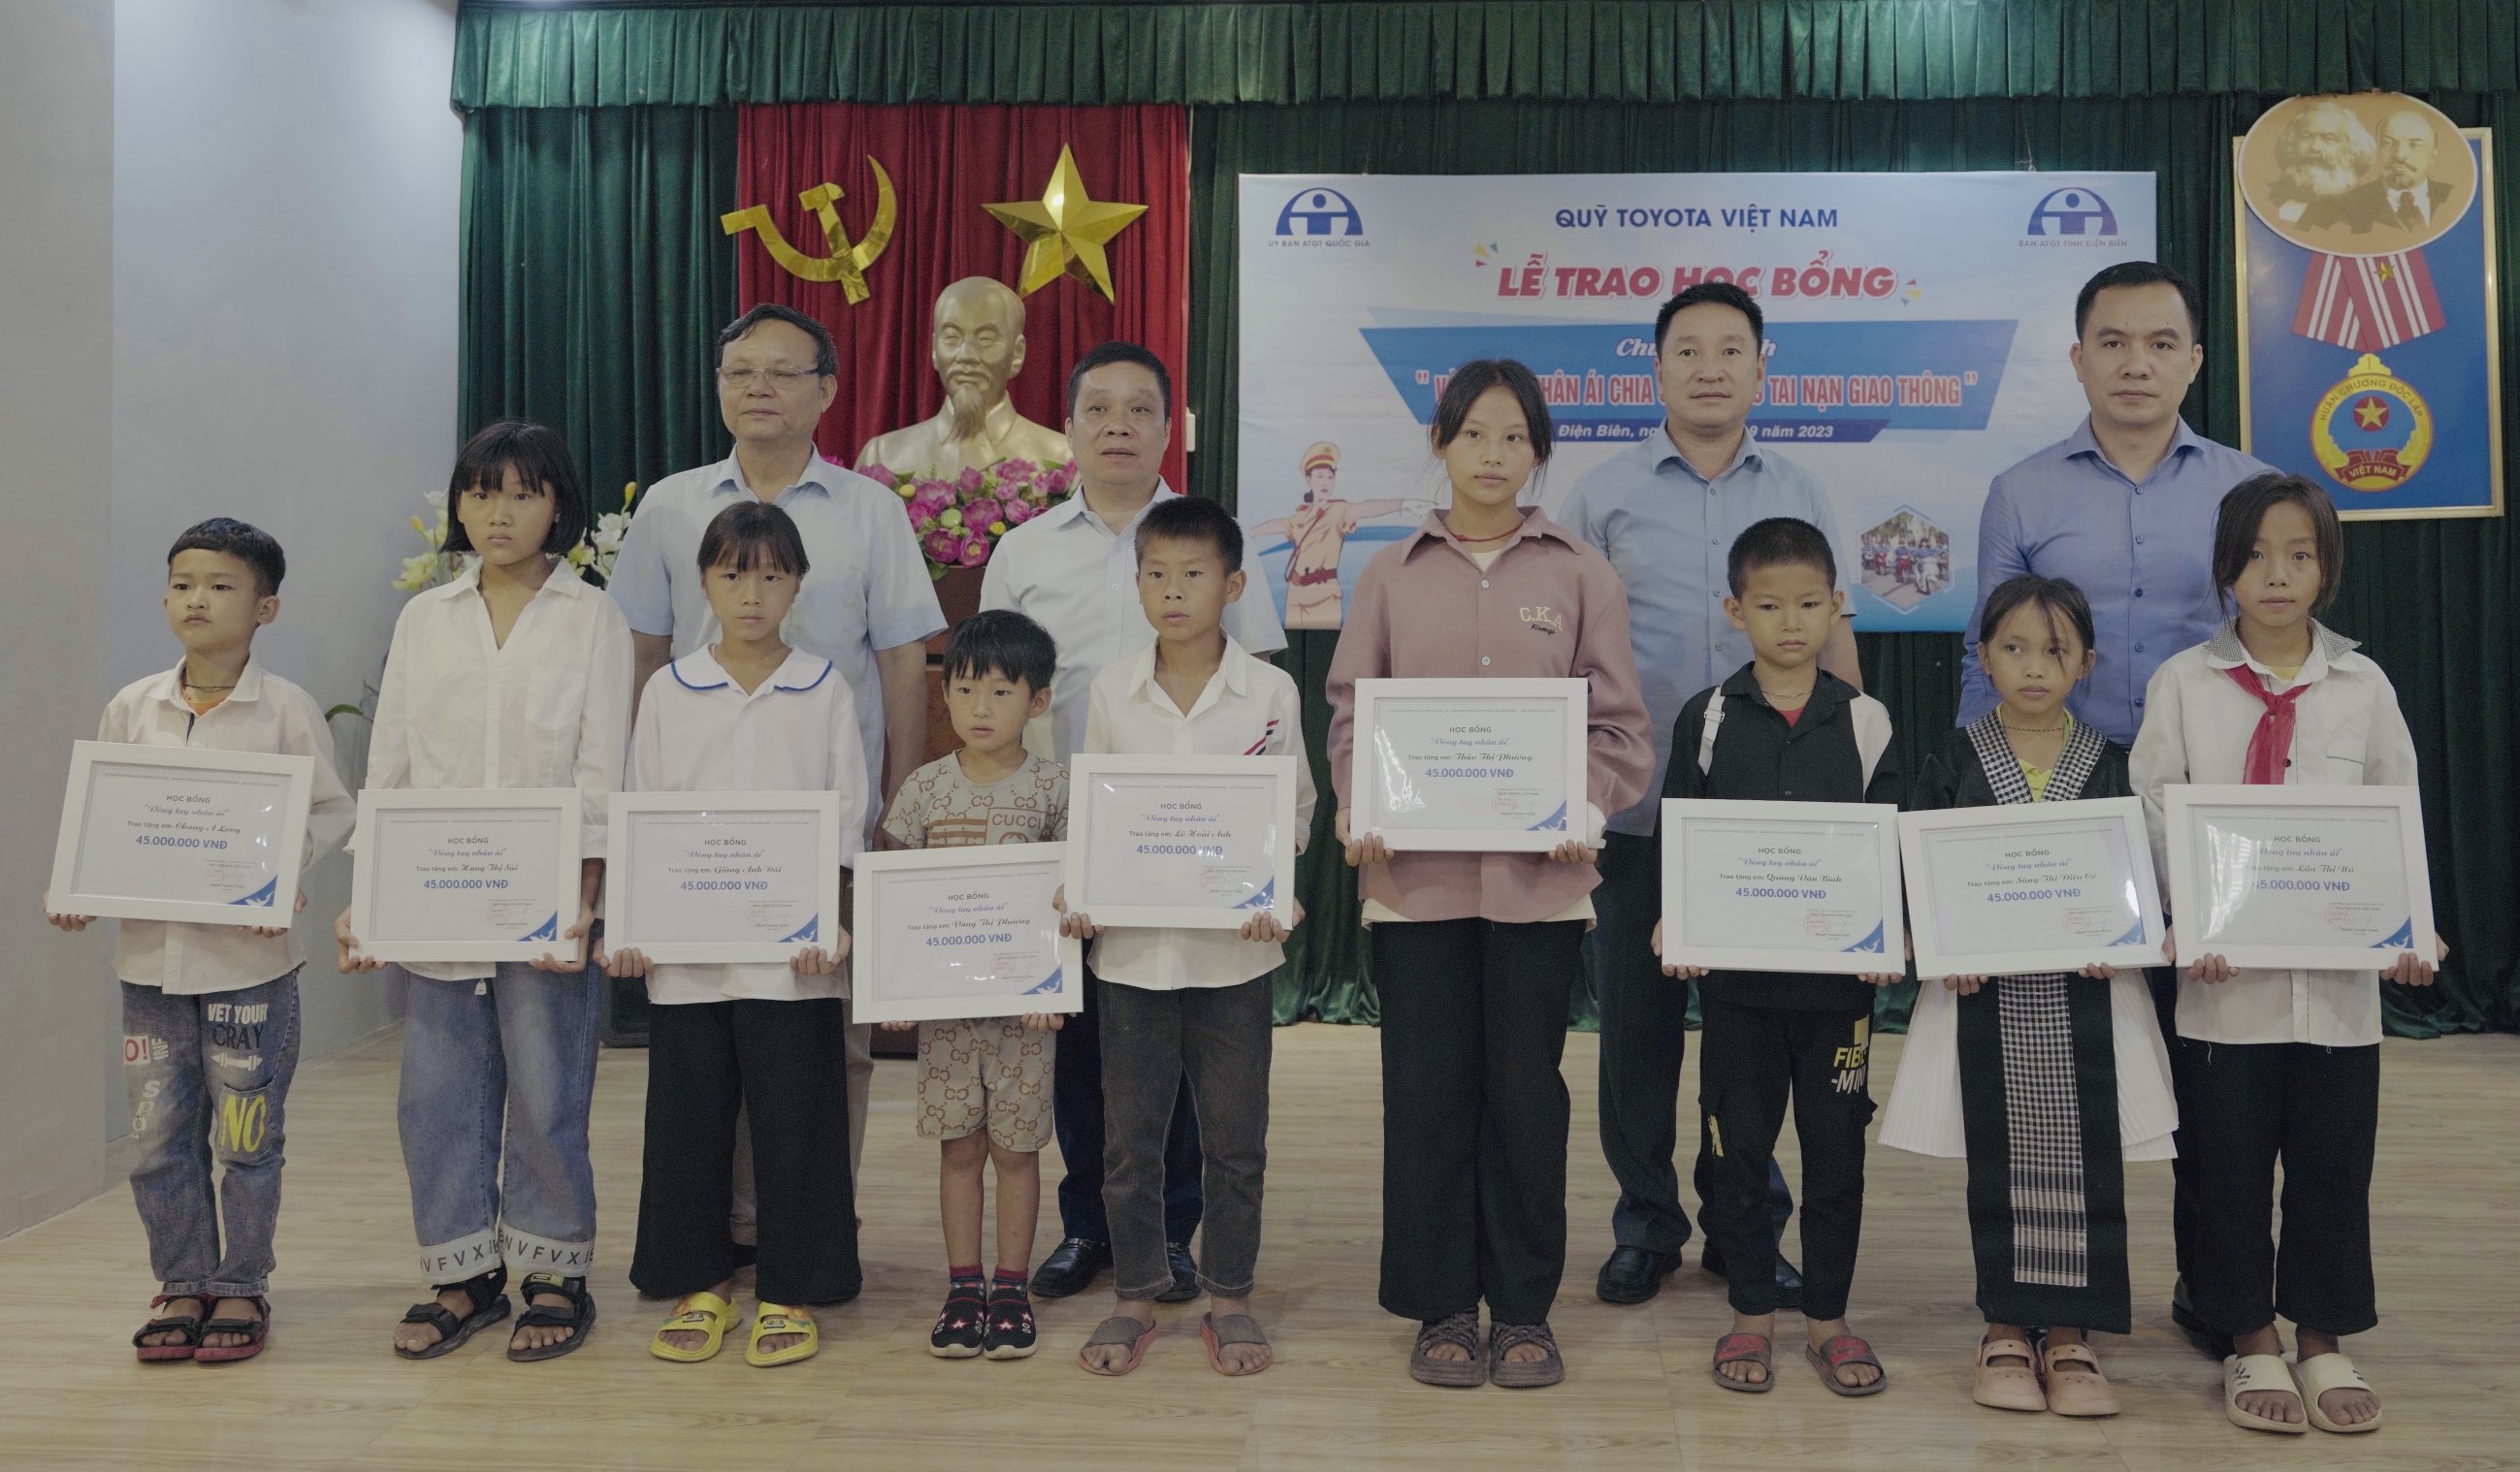 Quỹ Toyota trao tặng học bổng Vòng tay nhân ái tại Điện Biên